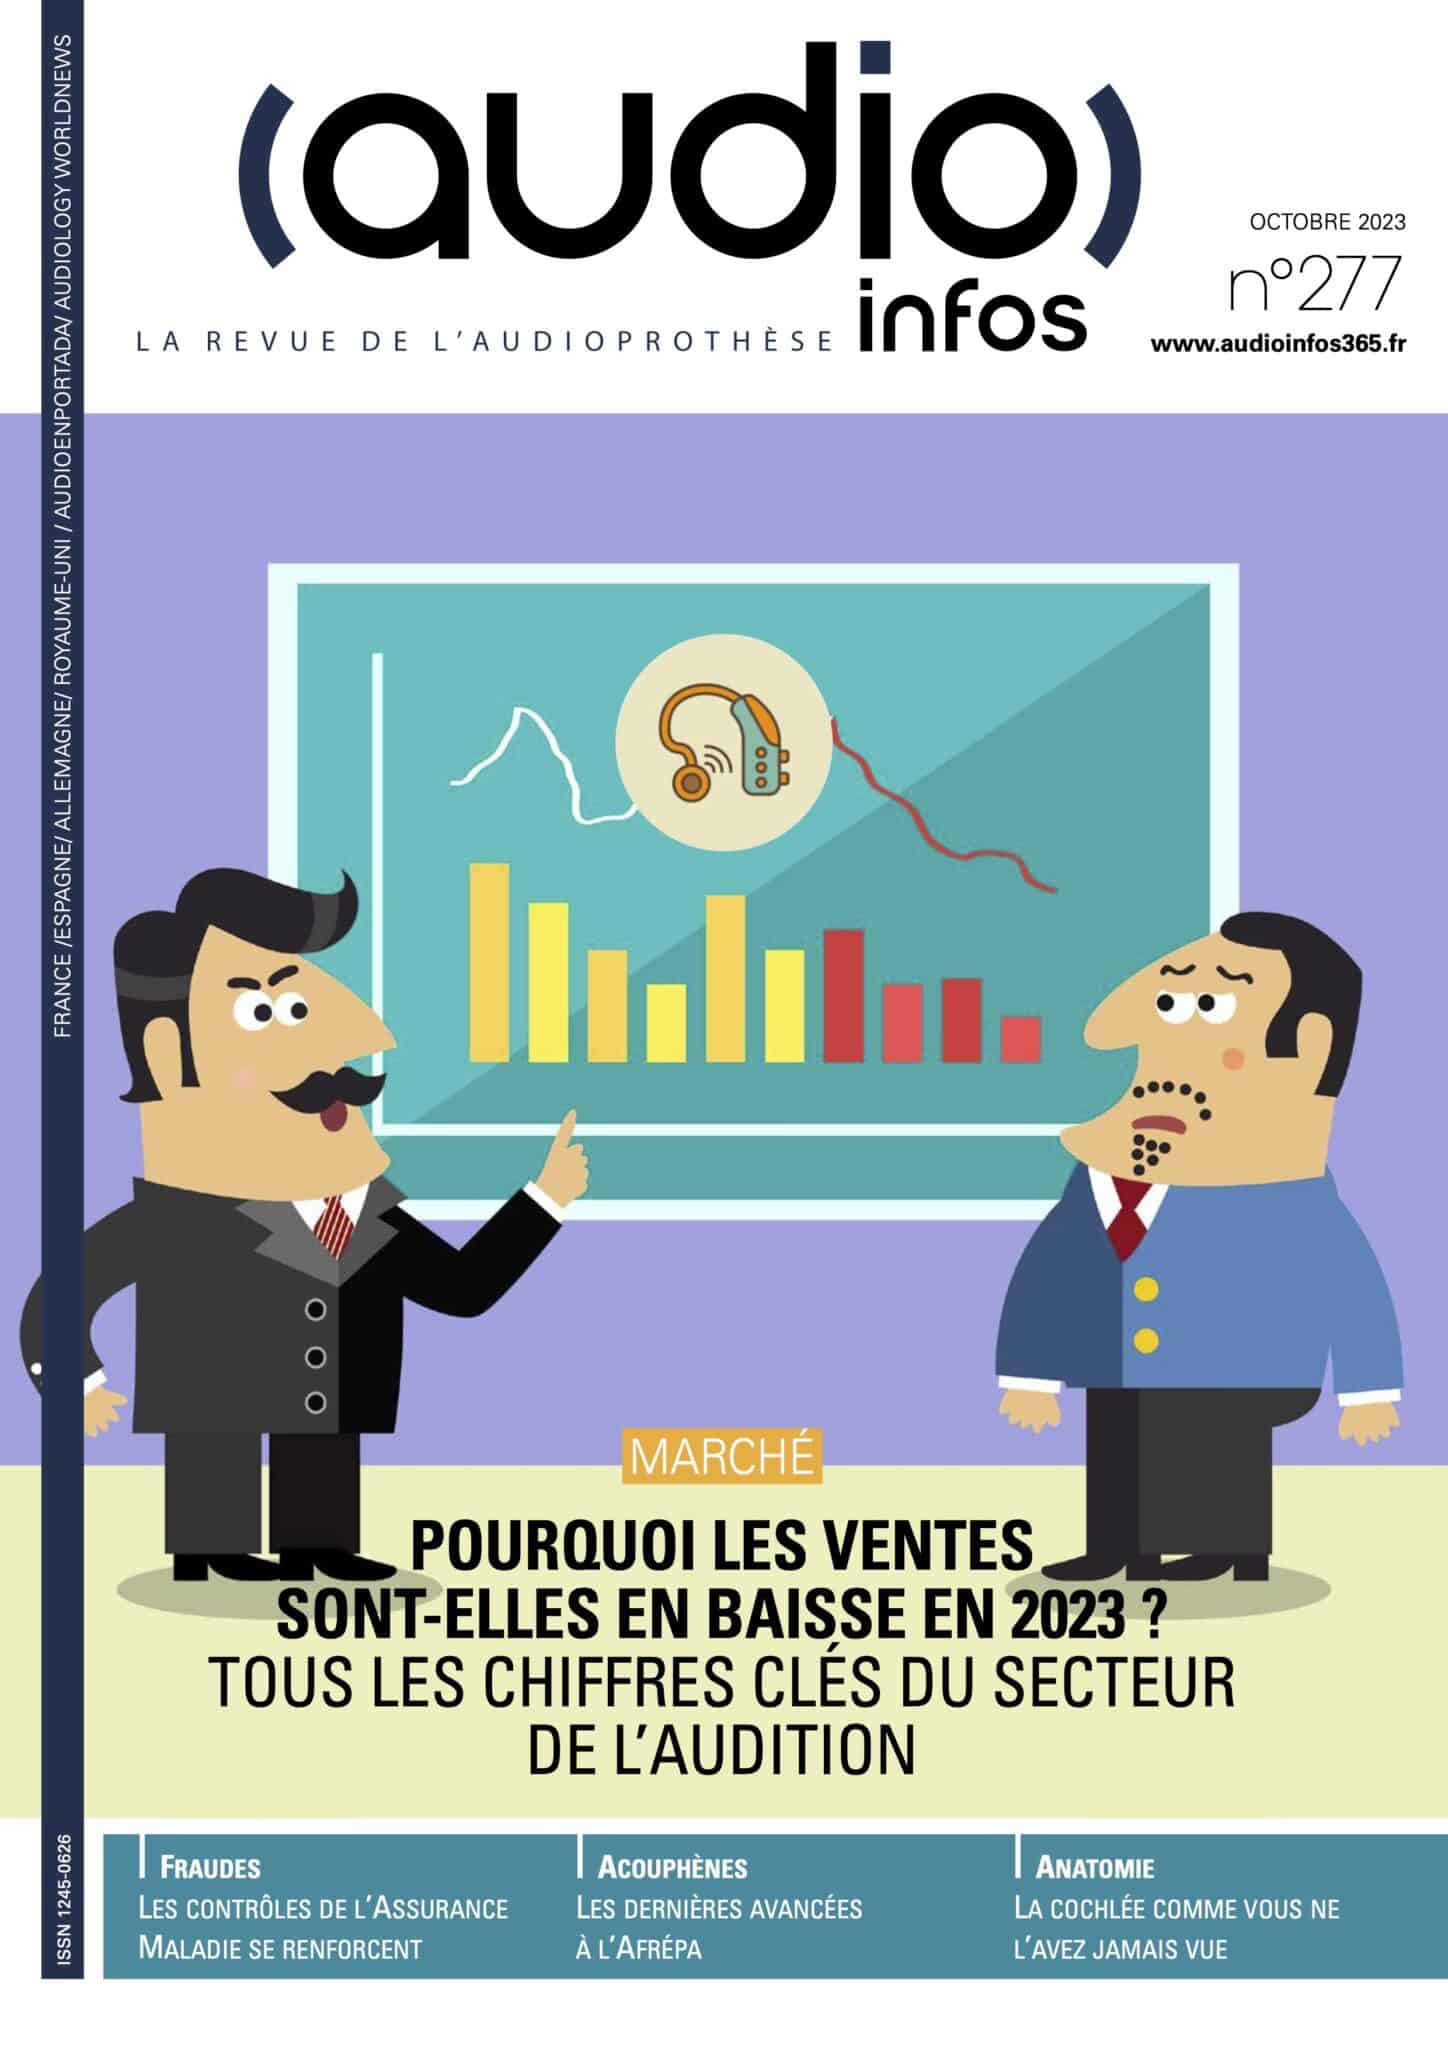 Couverture du magazine Audio infos France n°277 de octobre 2023